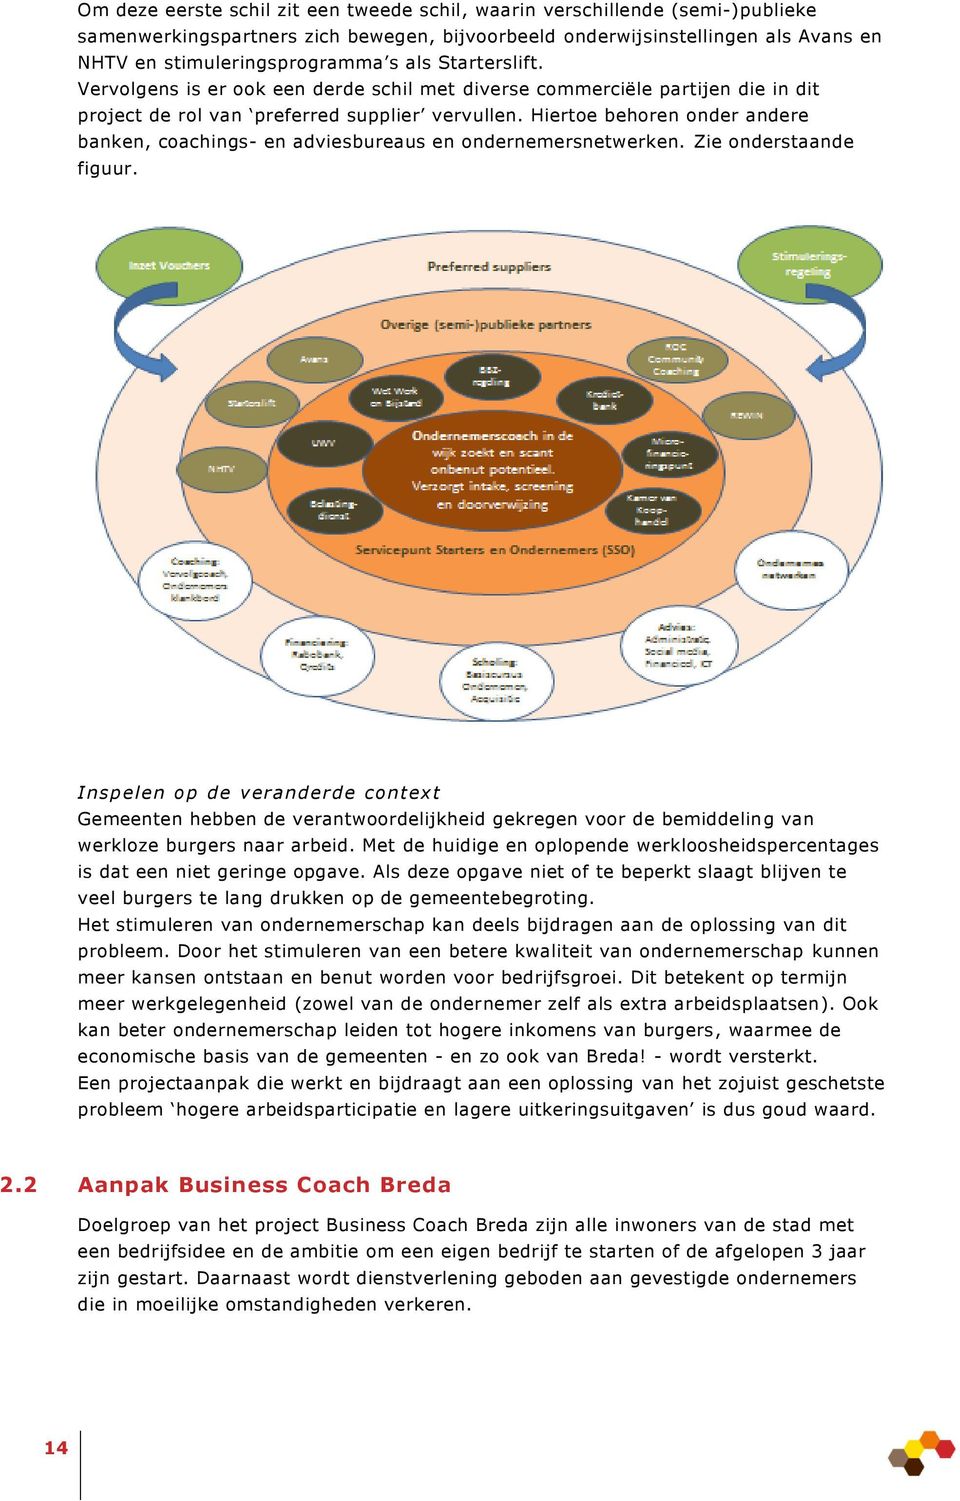 Hiertoe behoren onder andere banken, coachings- en adviesbureaus en ondernemersnetwerken. Zie onderstaande figuur.